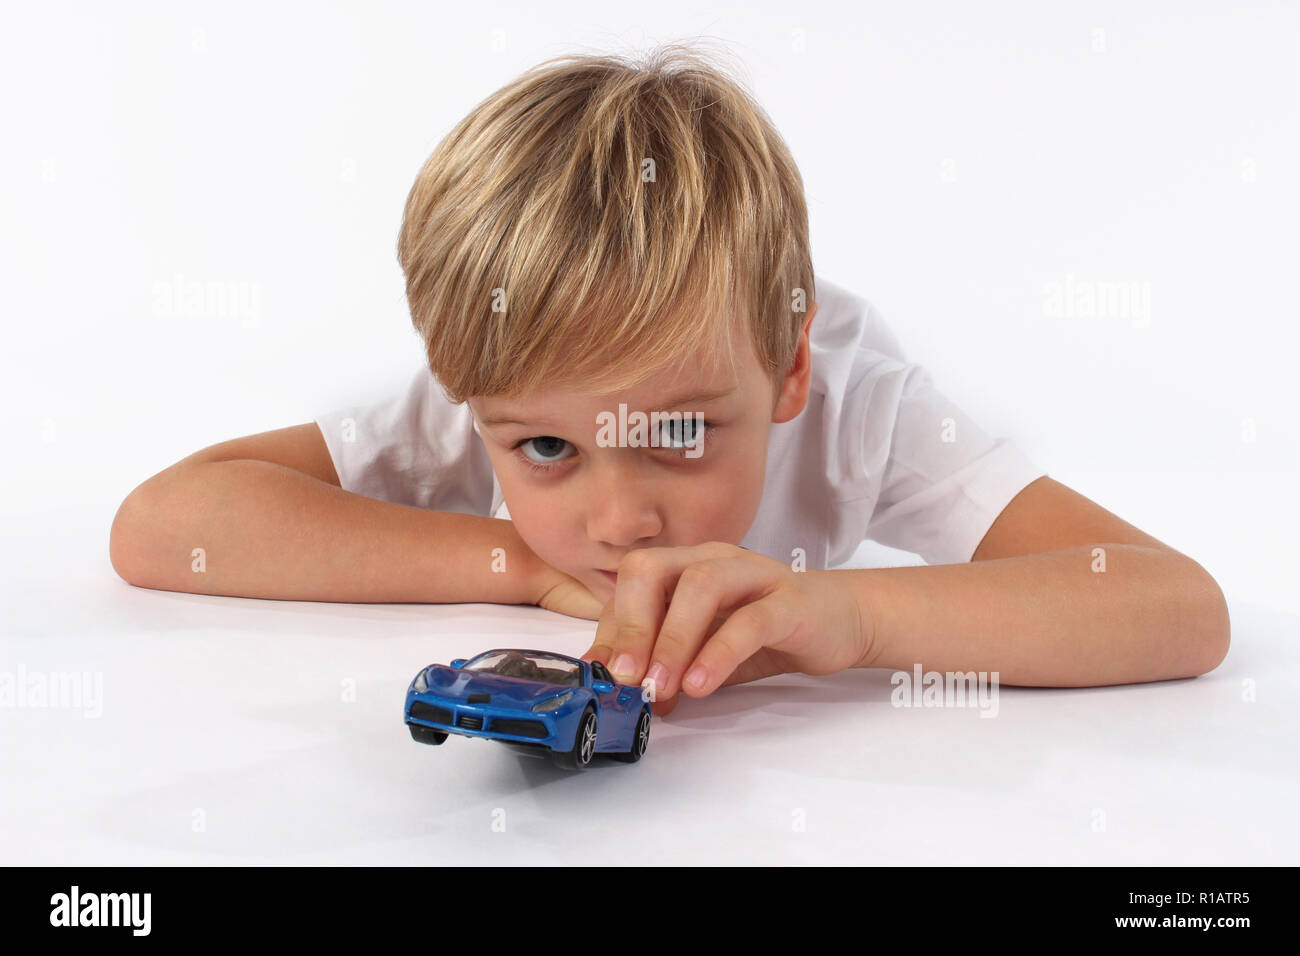 Cute blond blaue Augen kleiner Junge spielt mit dem Auto Spielzeug  Stockfotografie - Alamy